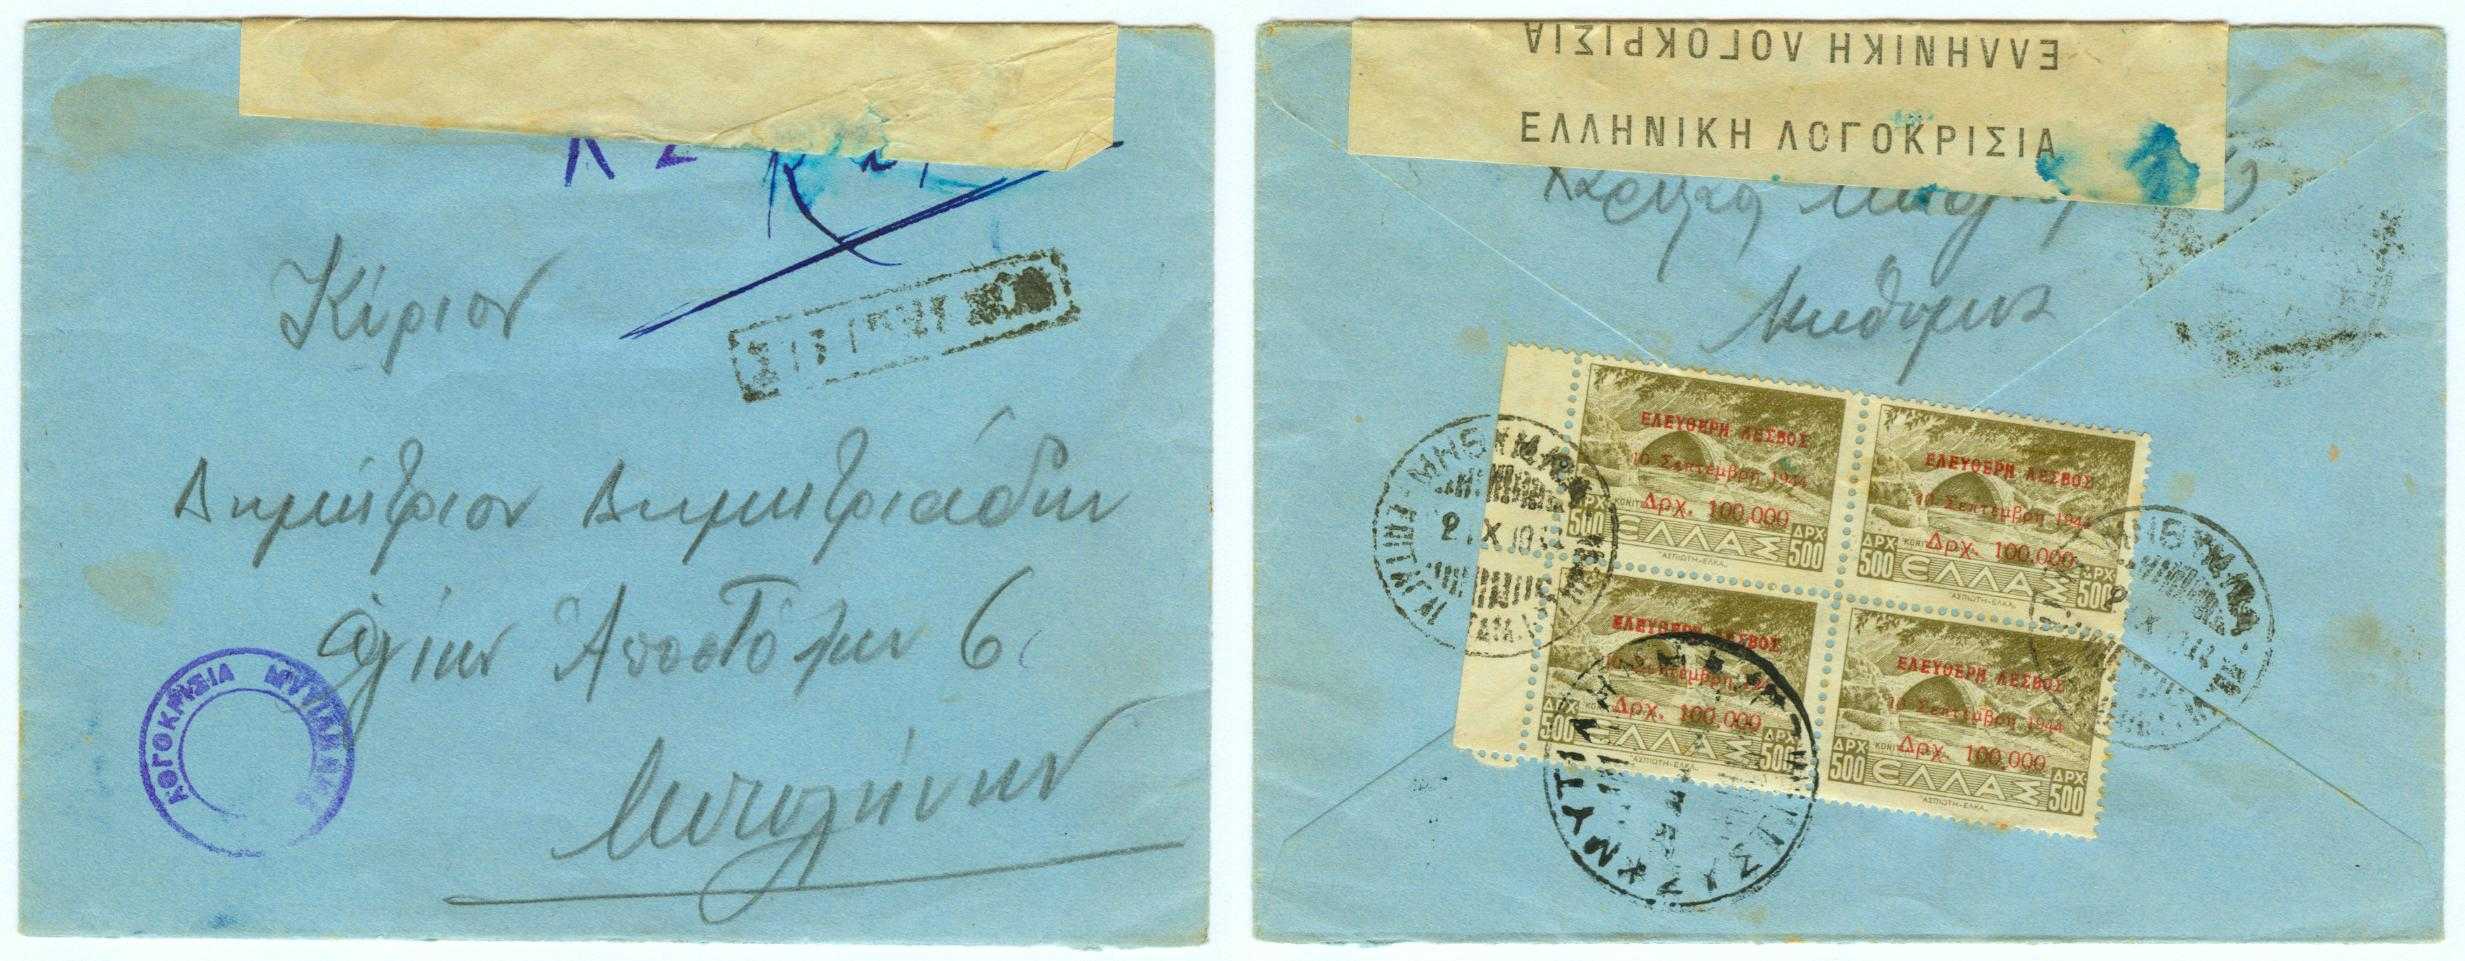 21.10.1944 Greece Lesbos censored letter